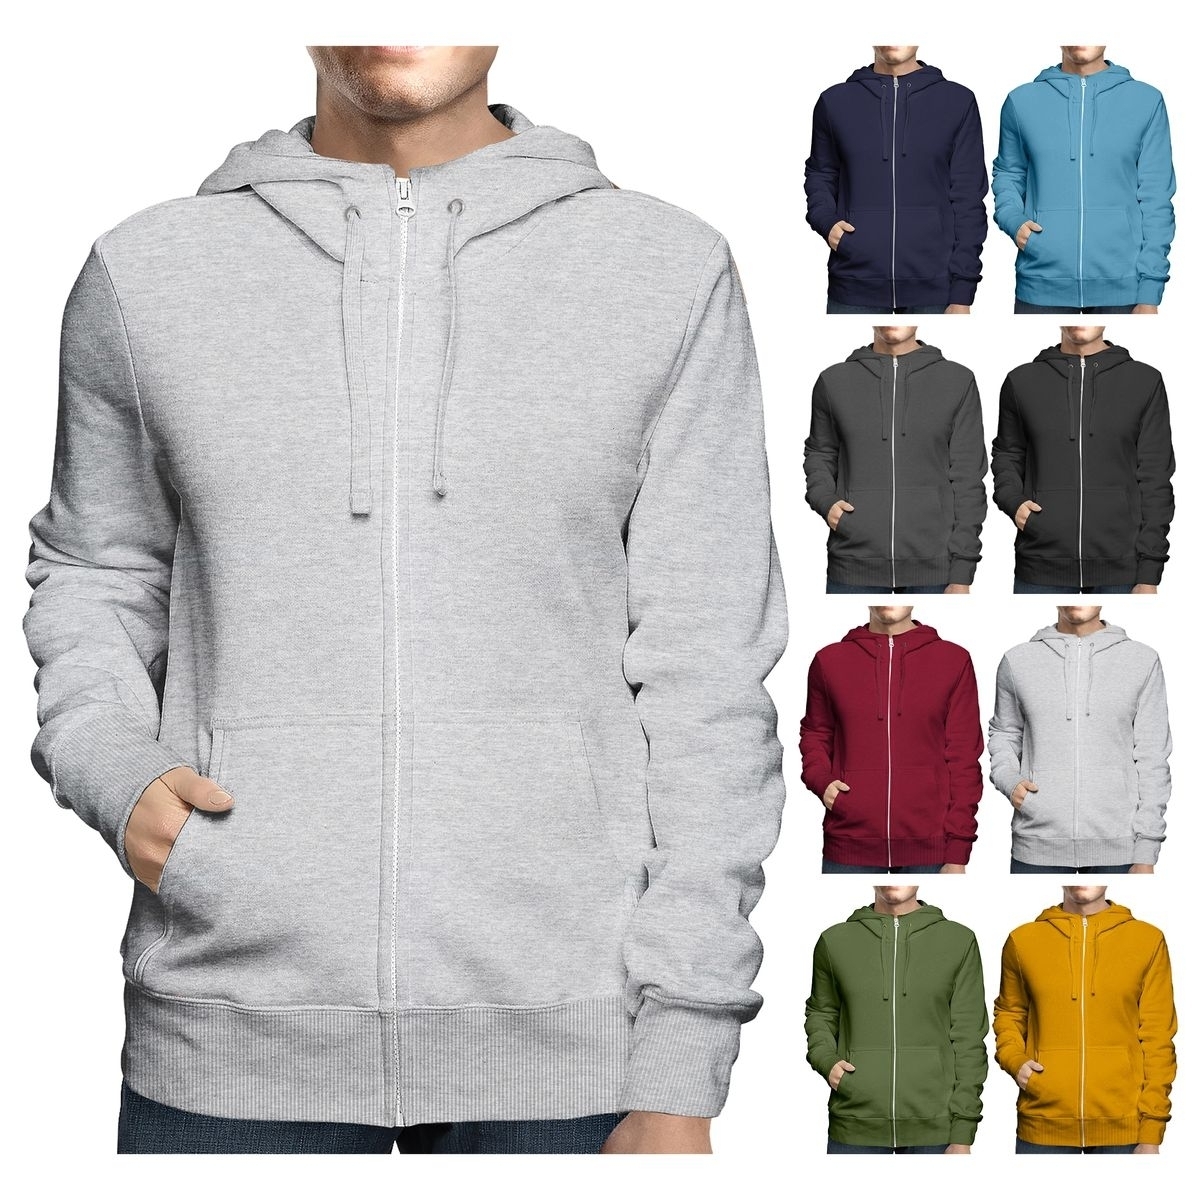 Men's Big & Tall Winter Warm Soft Cozy Full Zip-Up Fleece Lined Hoodie Sweatshirt - Navy, Small